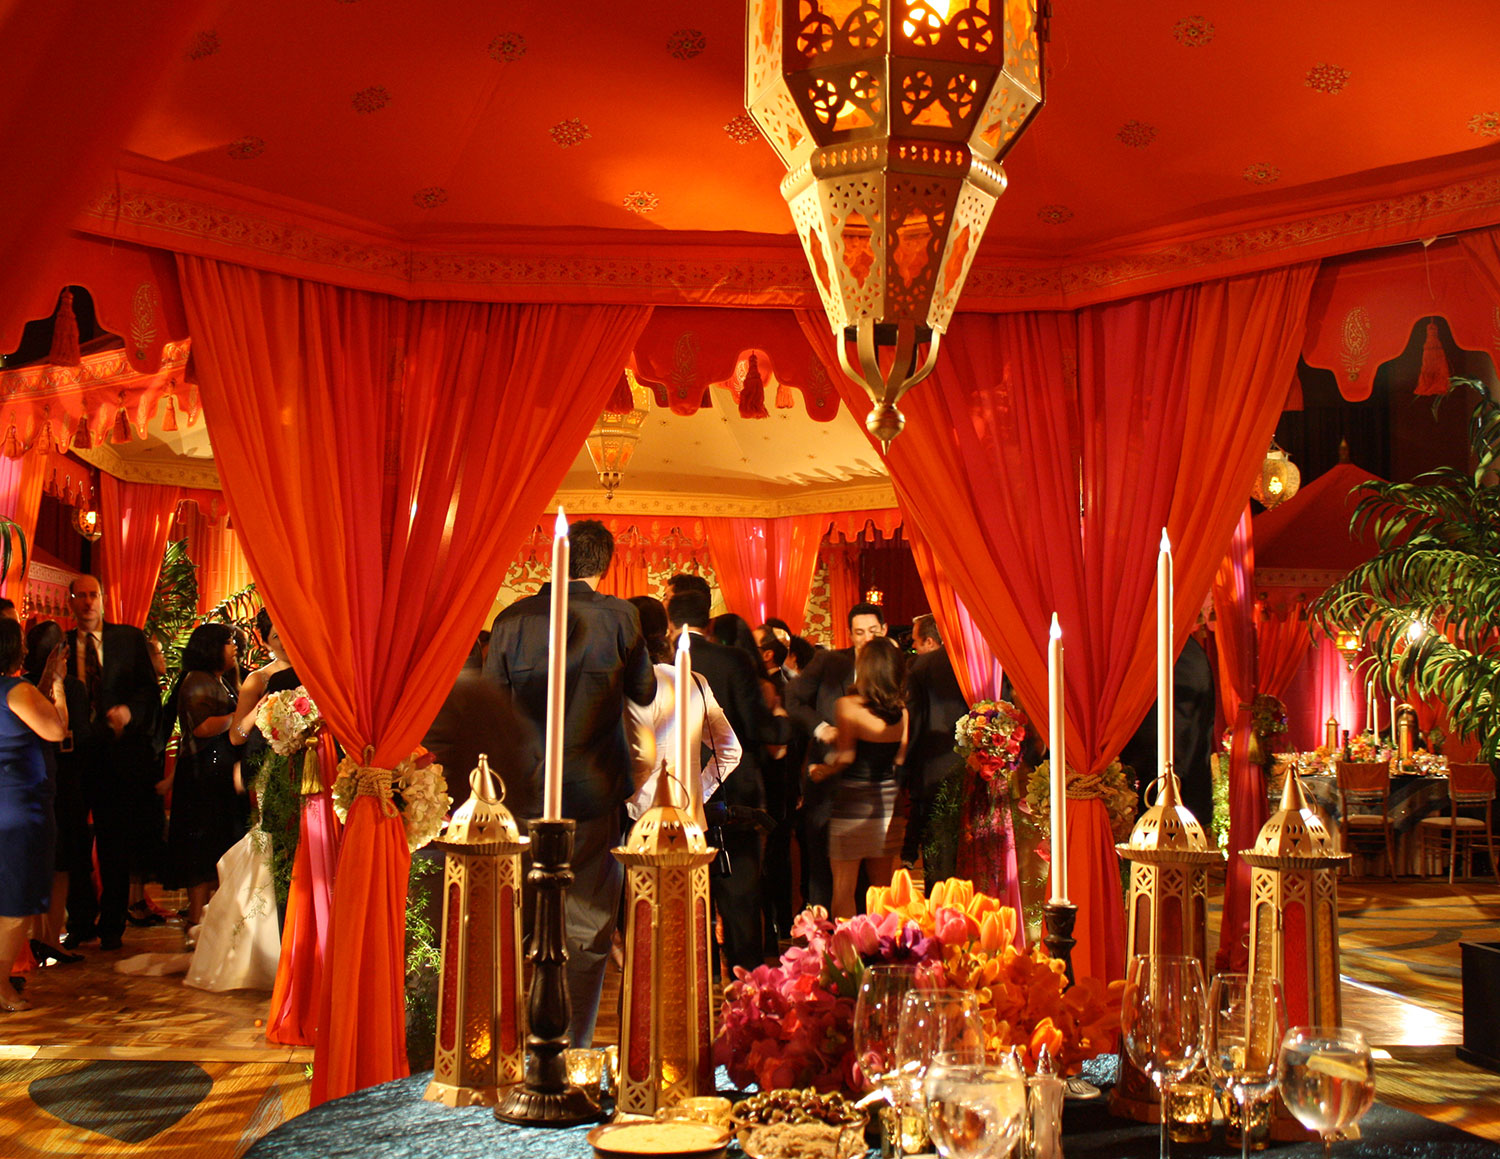 Moroccan Theme Meets Luxury Wedding | Arabian nights wedding theme, Moroccan  theme, Arabian nights wedding